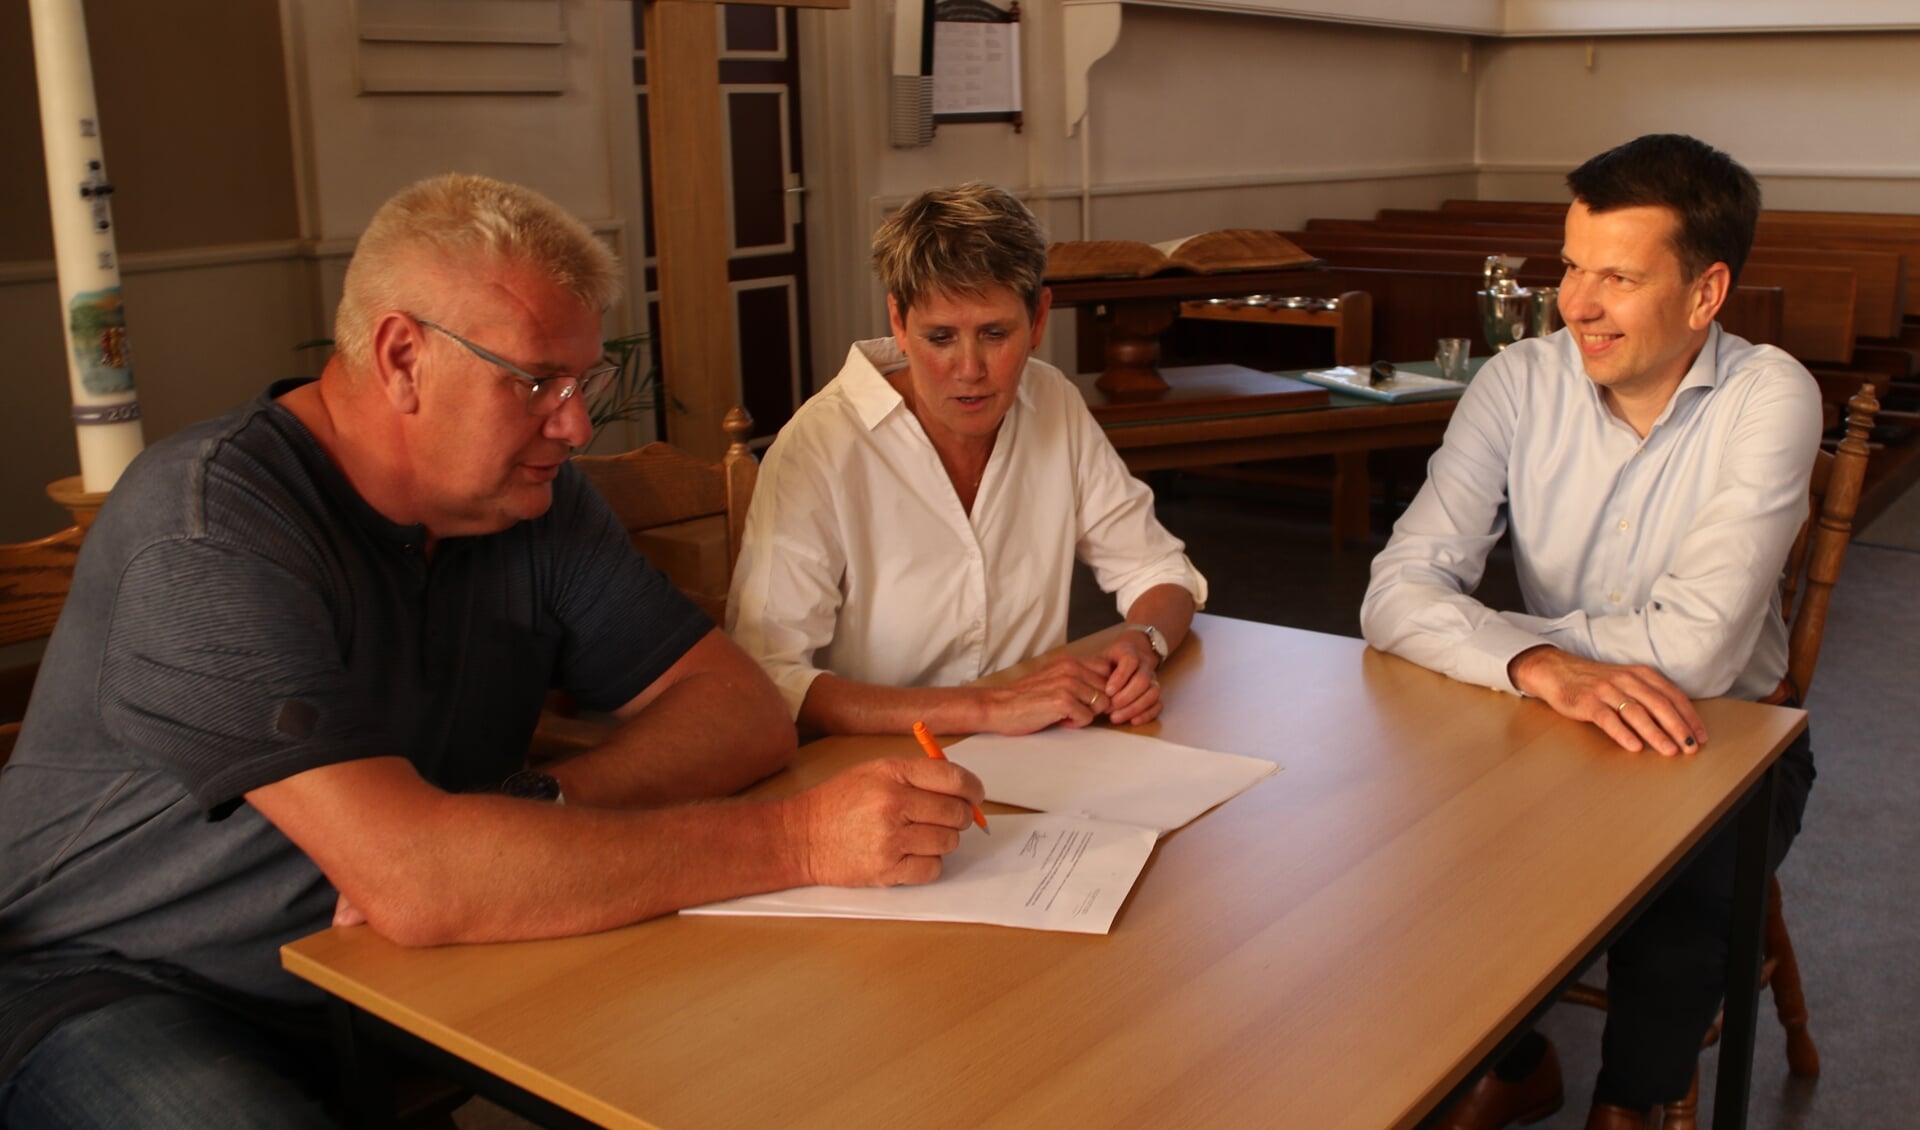 De akte werd ondertekend door Harjan Winter en Geke Euving onder toeziend oog van notaris Ronald Brinkman (rechts).  